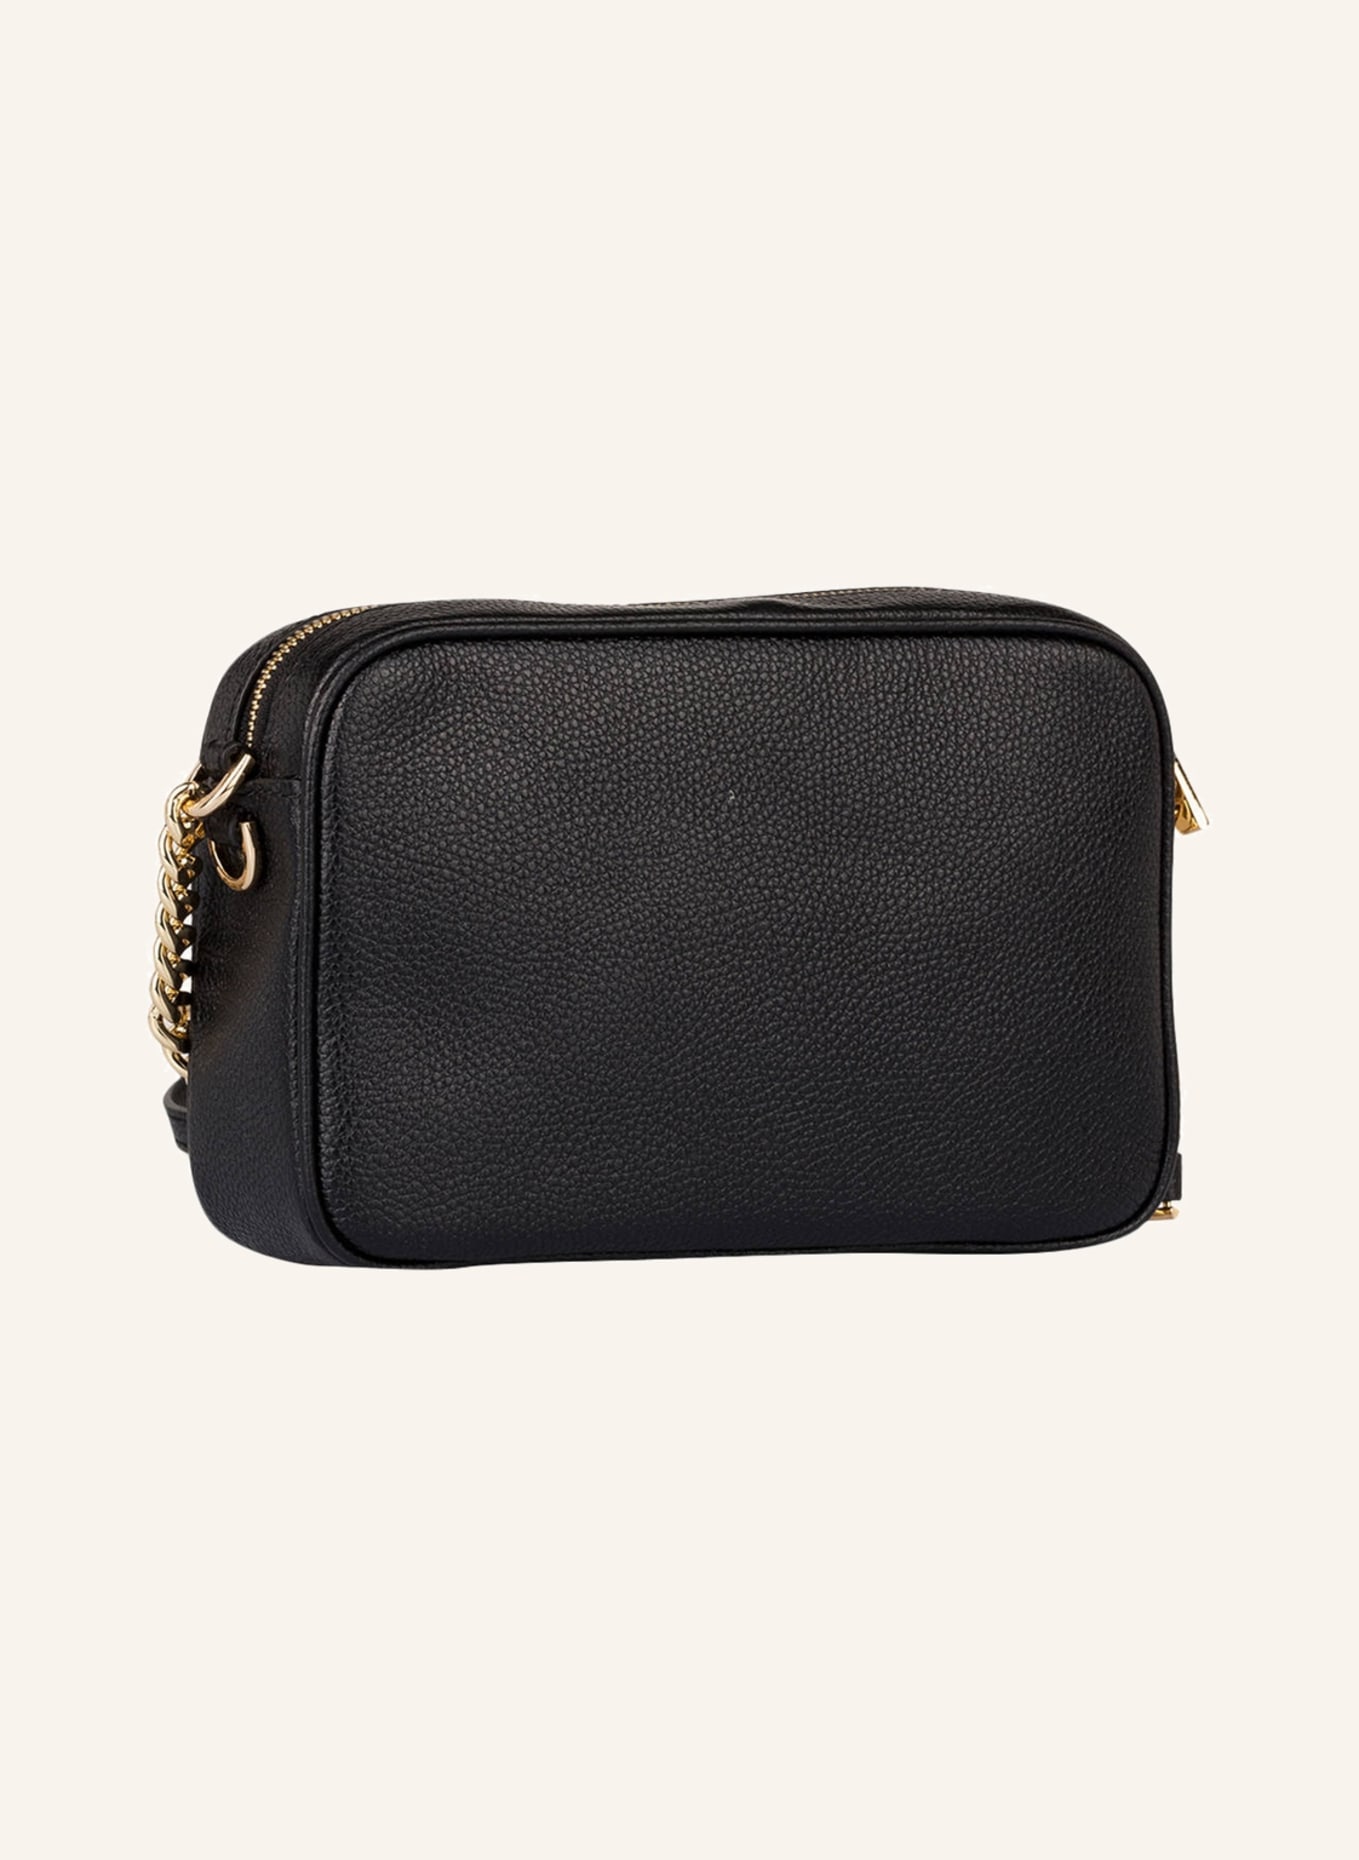 MICHAEL KORS Shoulder bag GINNY, Color: BLACK (Image 2)